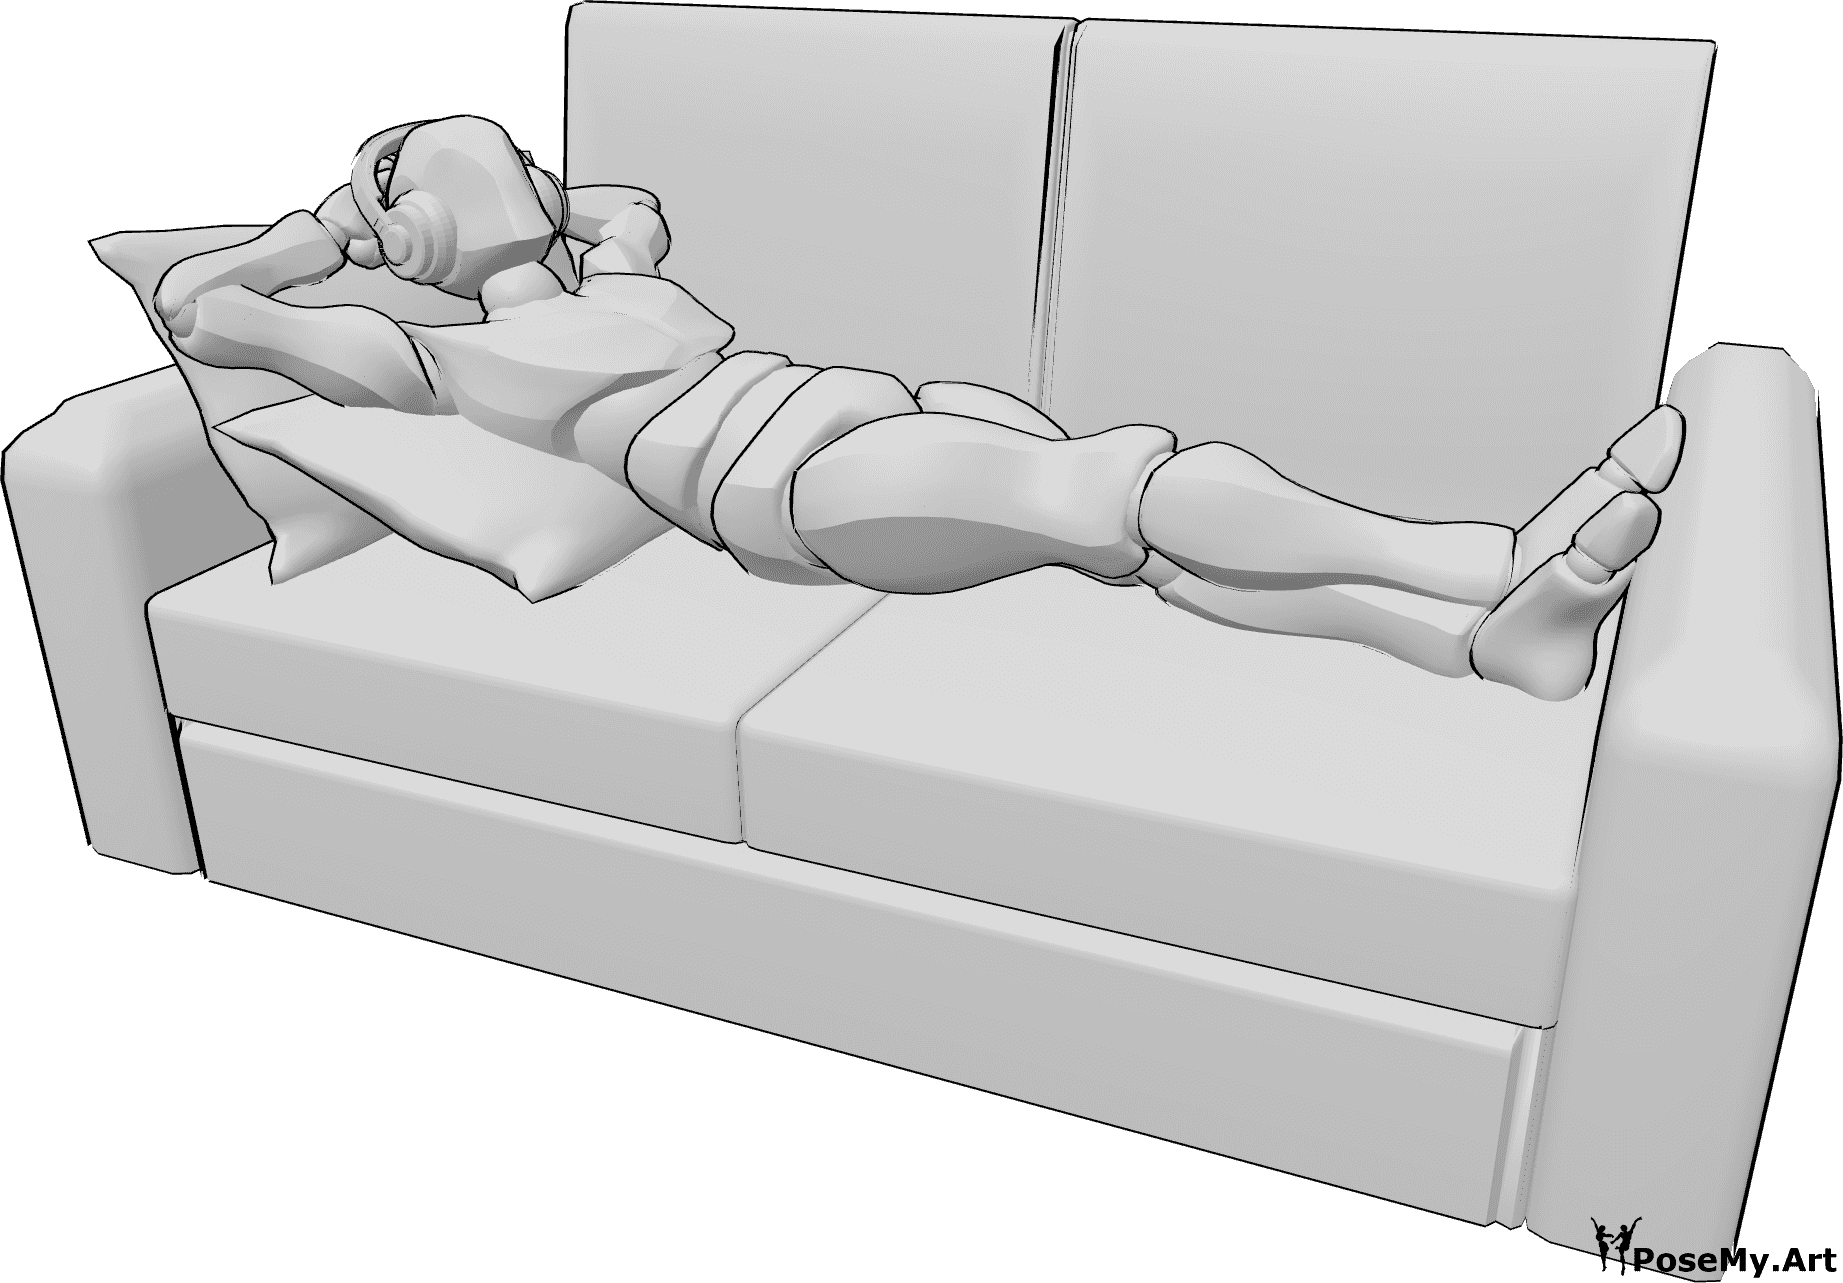 Referência de poses- Homem deitado em pose de auscultadores - O homem está deitado confortavelmente no sofá e ouve música com auscultadores